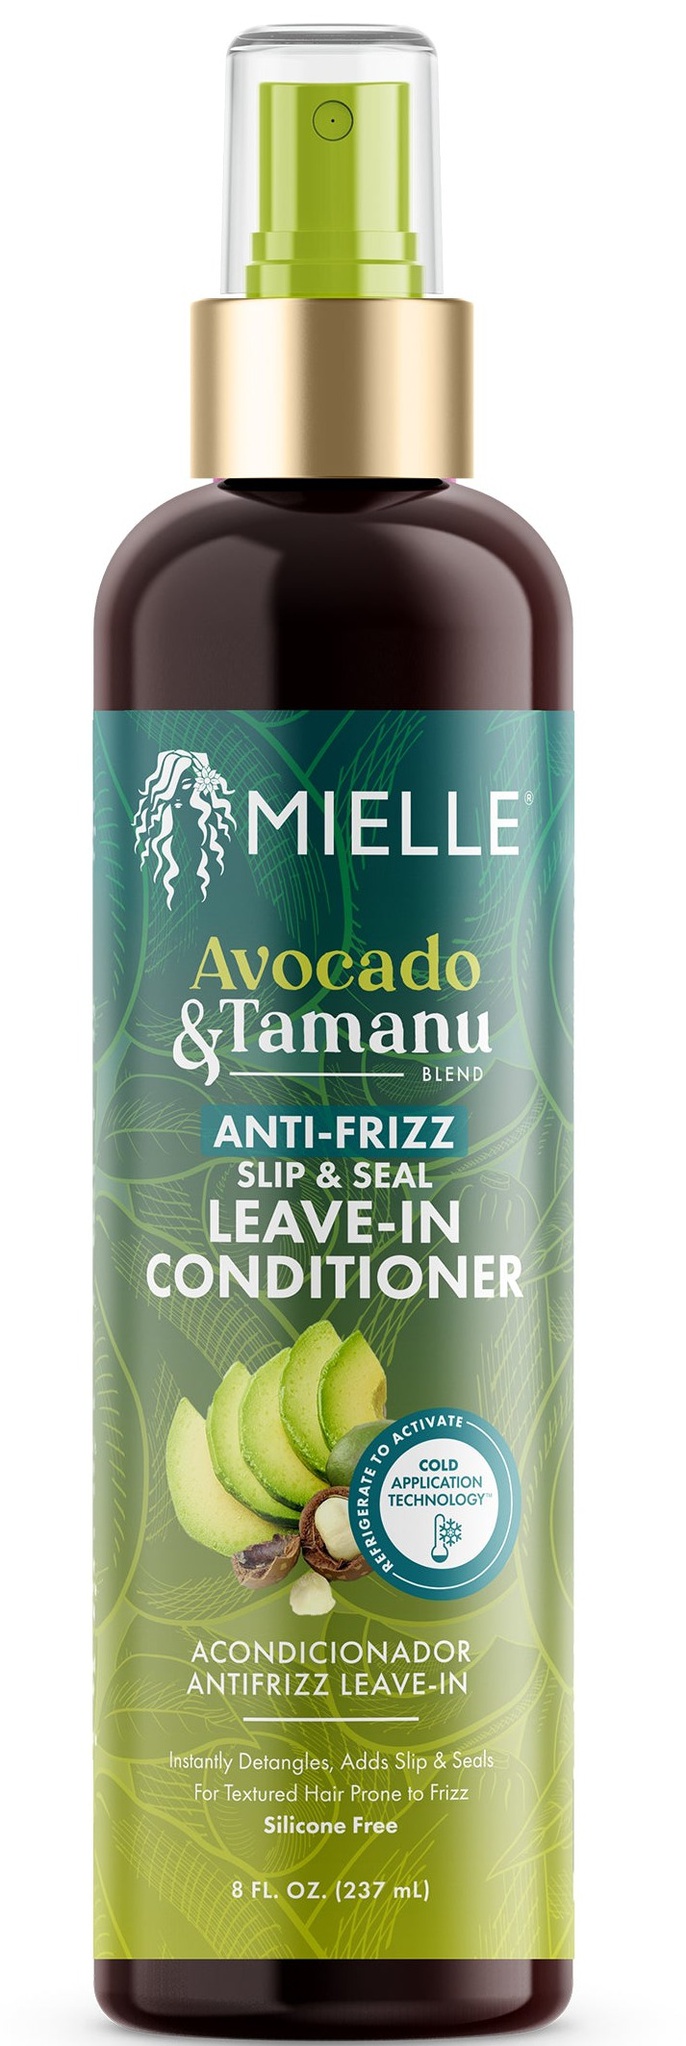 Mielle Avocado & Tamanu Anti-frizz Slip & Seal Leave-in Conditioner